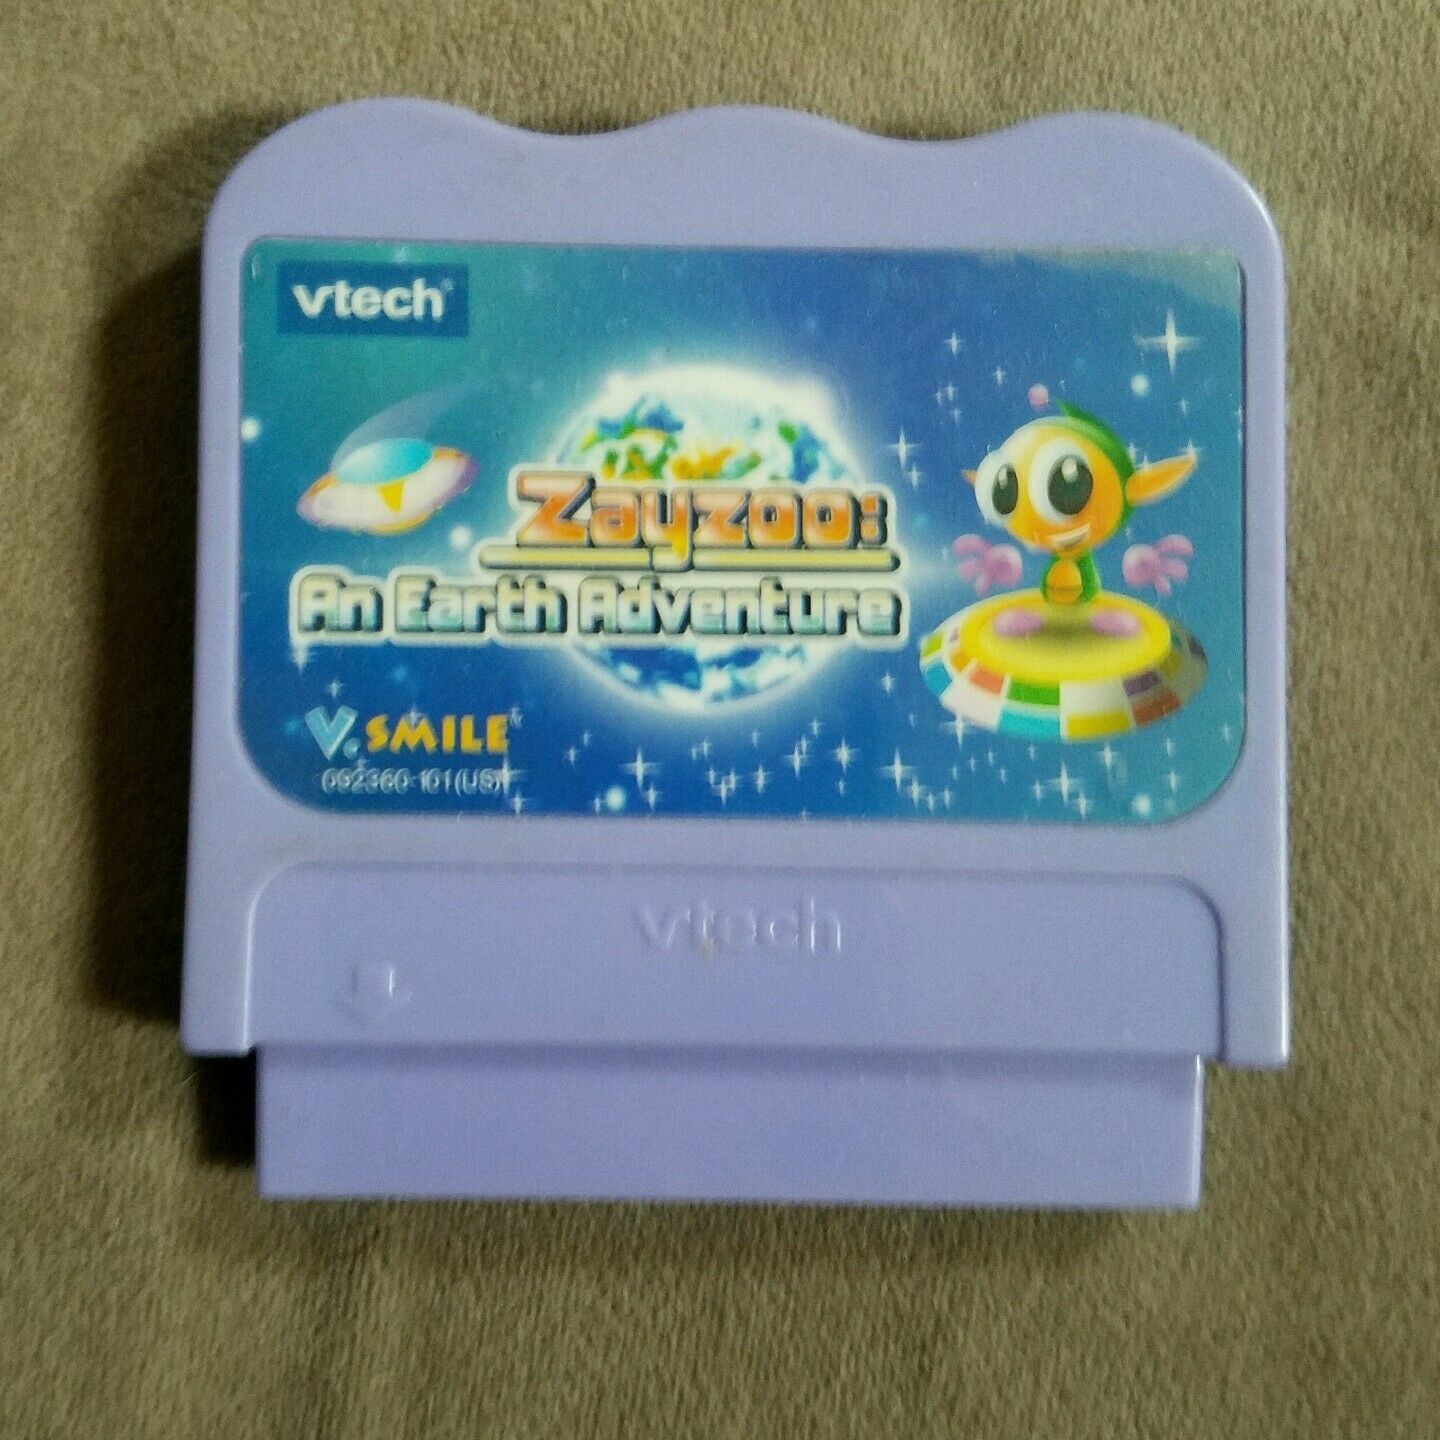 vtech V.SMILE Pro Lernspiel-System Memory Card 8MB 